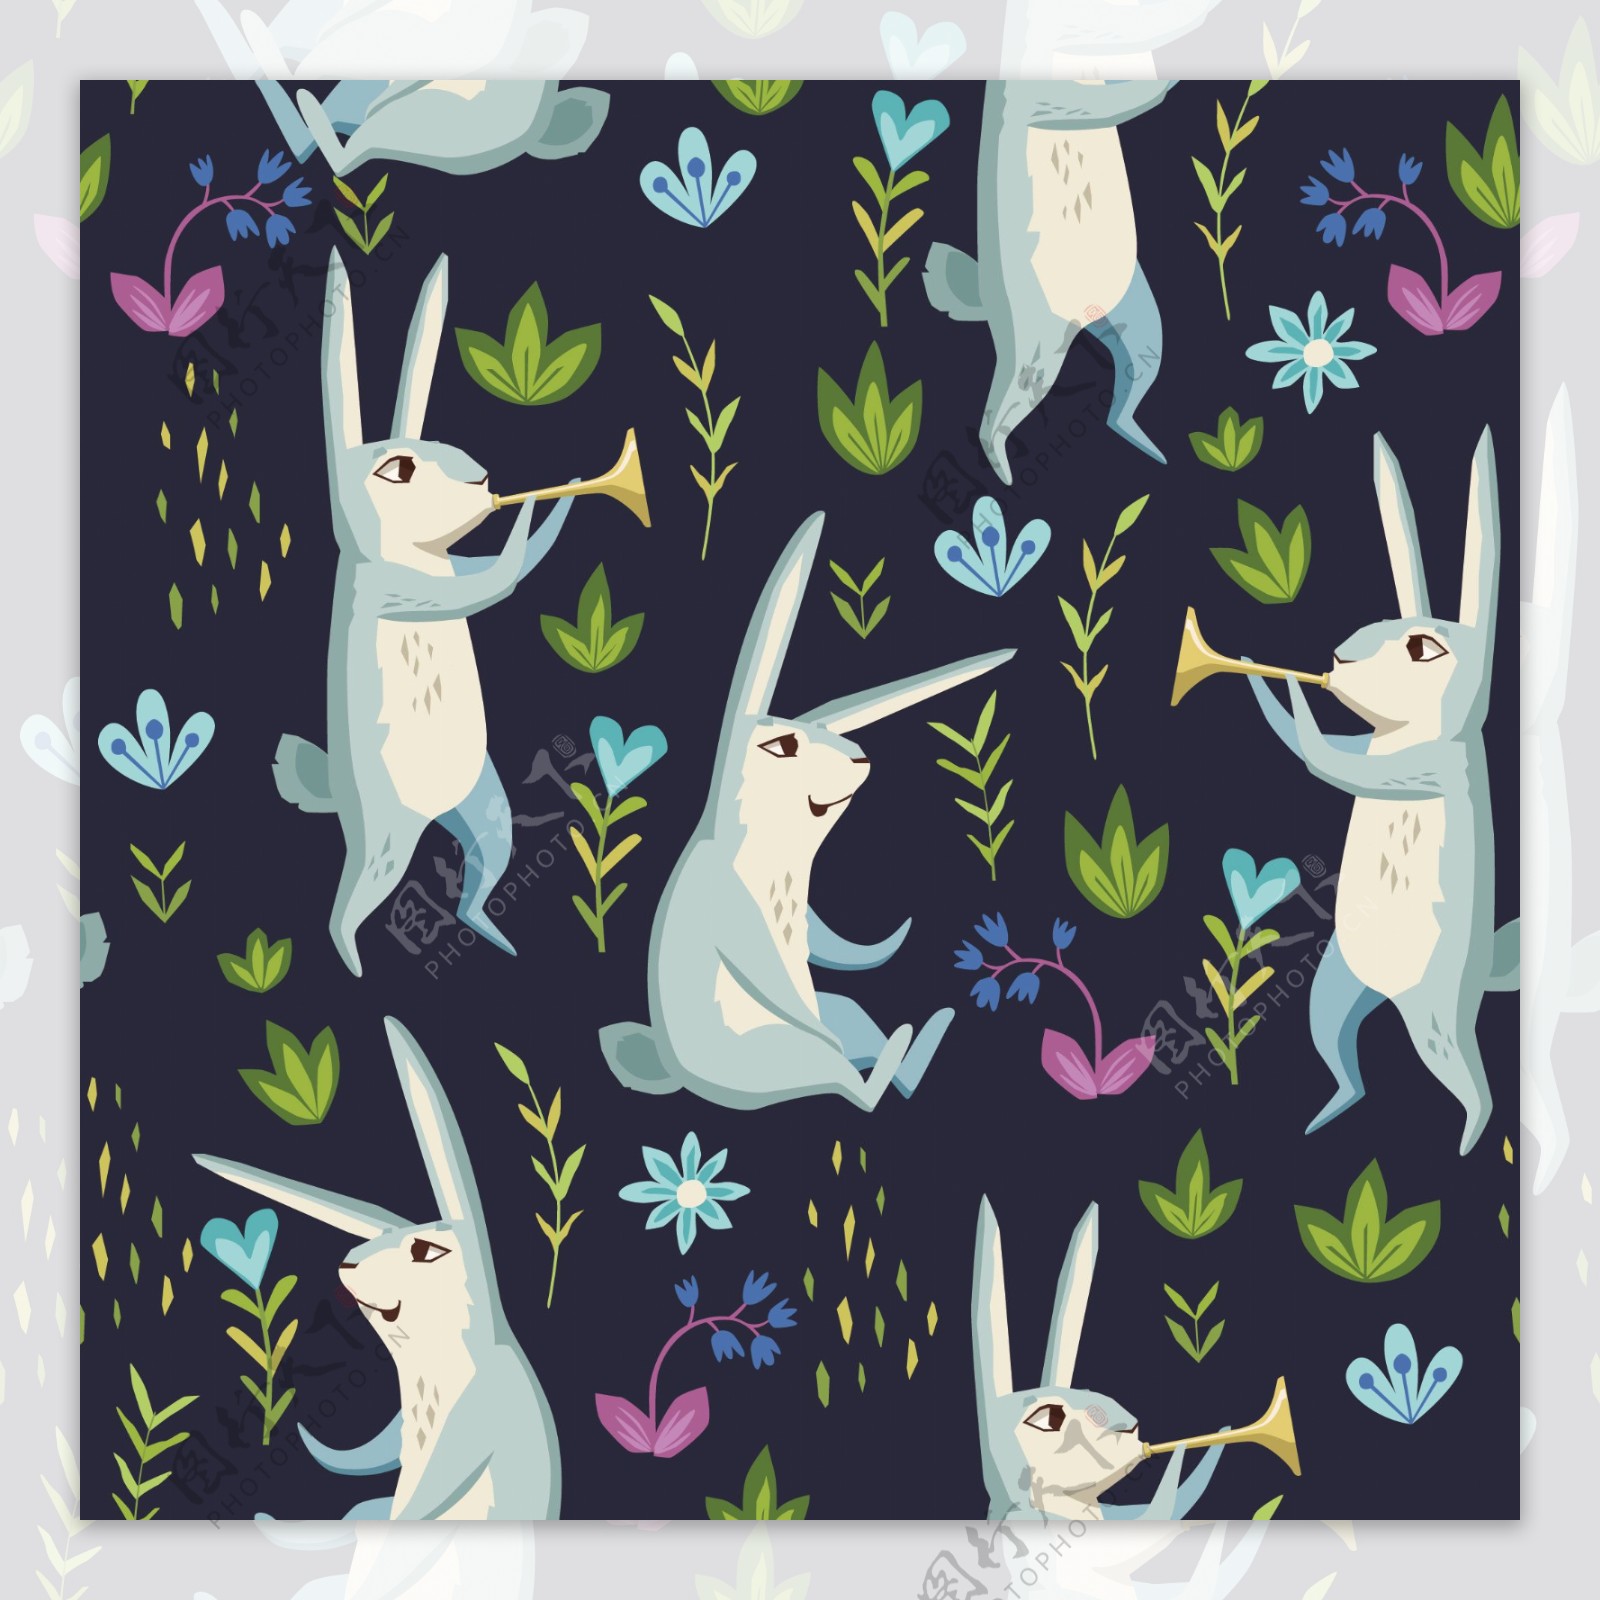 时尚手绘行走的兔子壁纸图案装饰设计